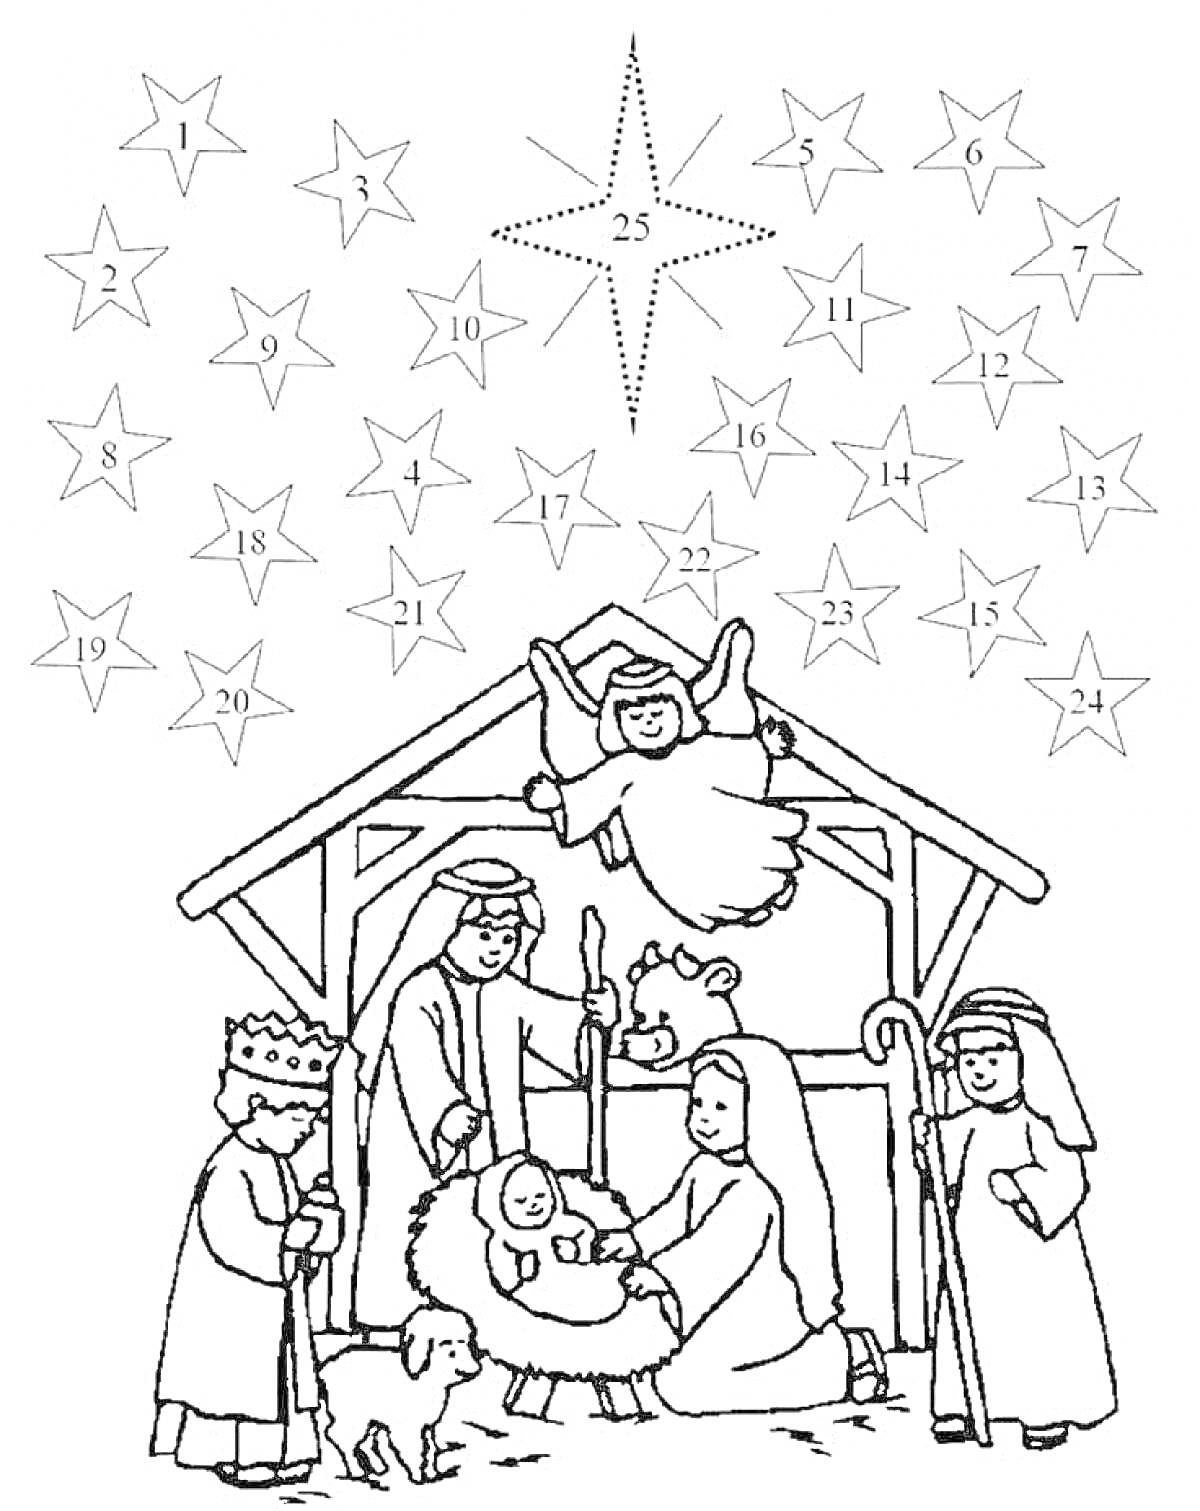 Раскраска Рождественский сюжет с яслями, ангелом, людьми и звездой на небе с числами